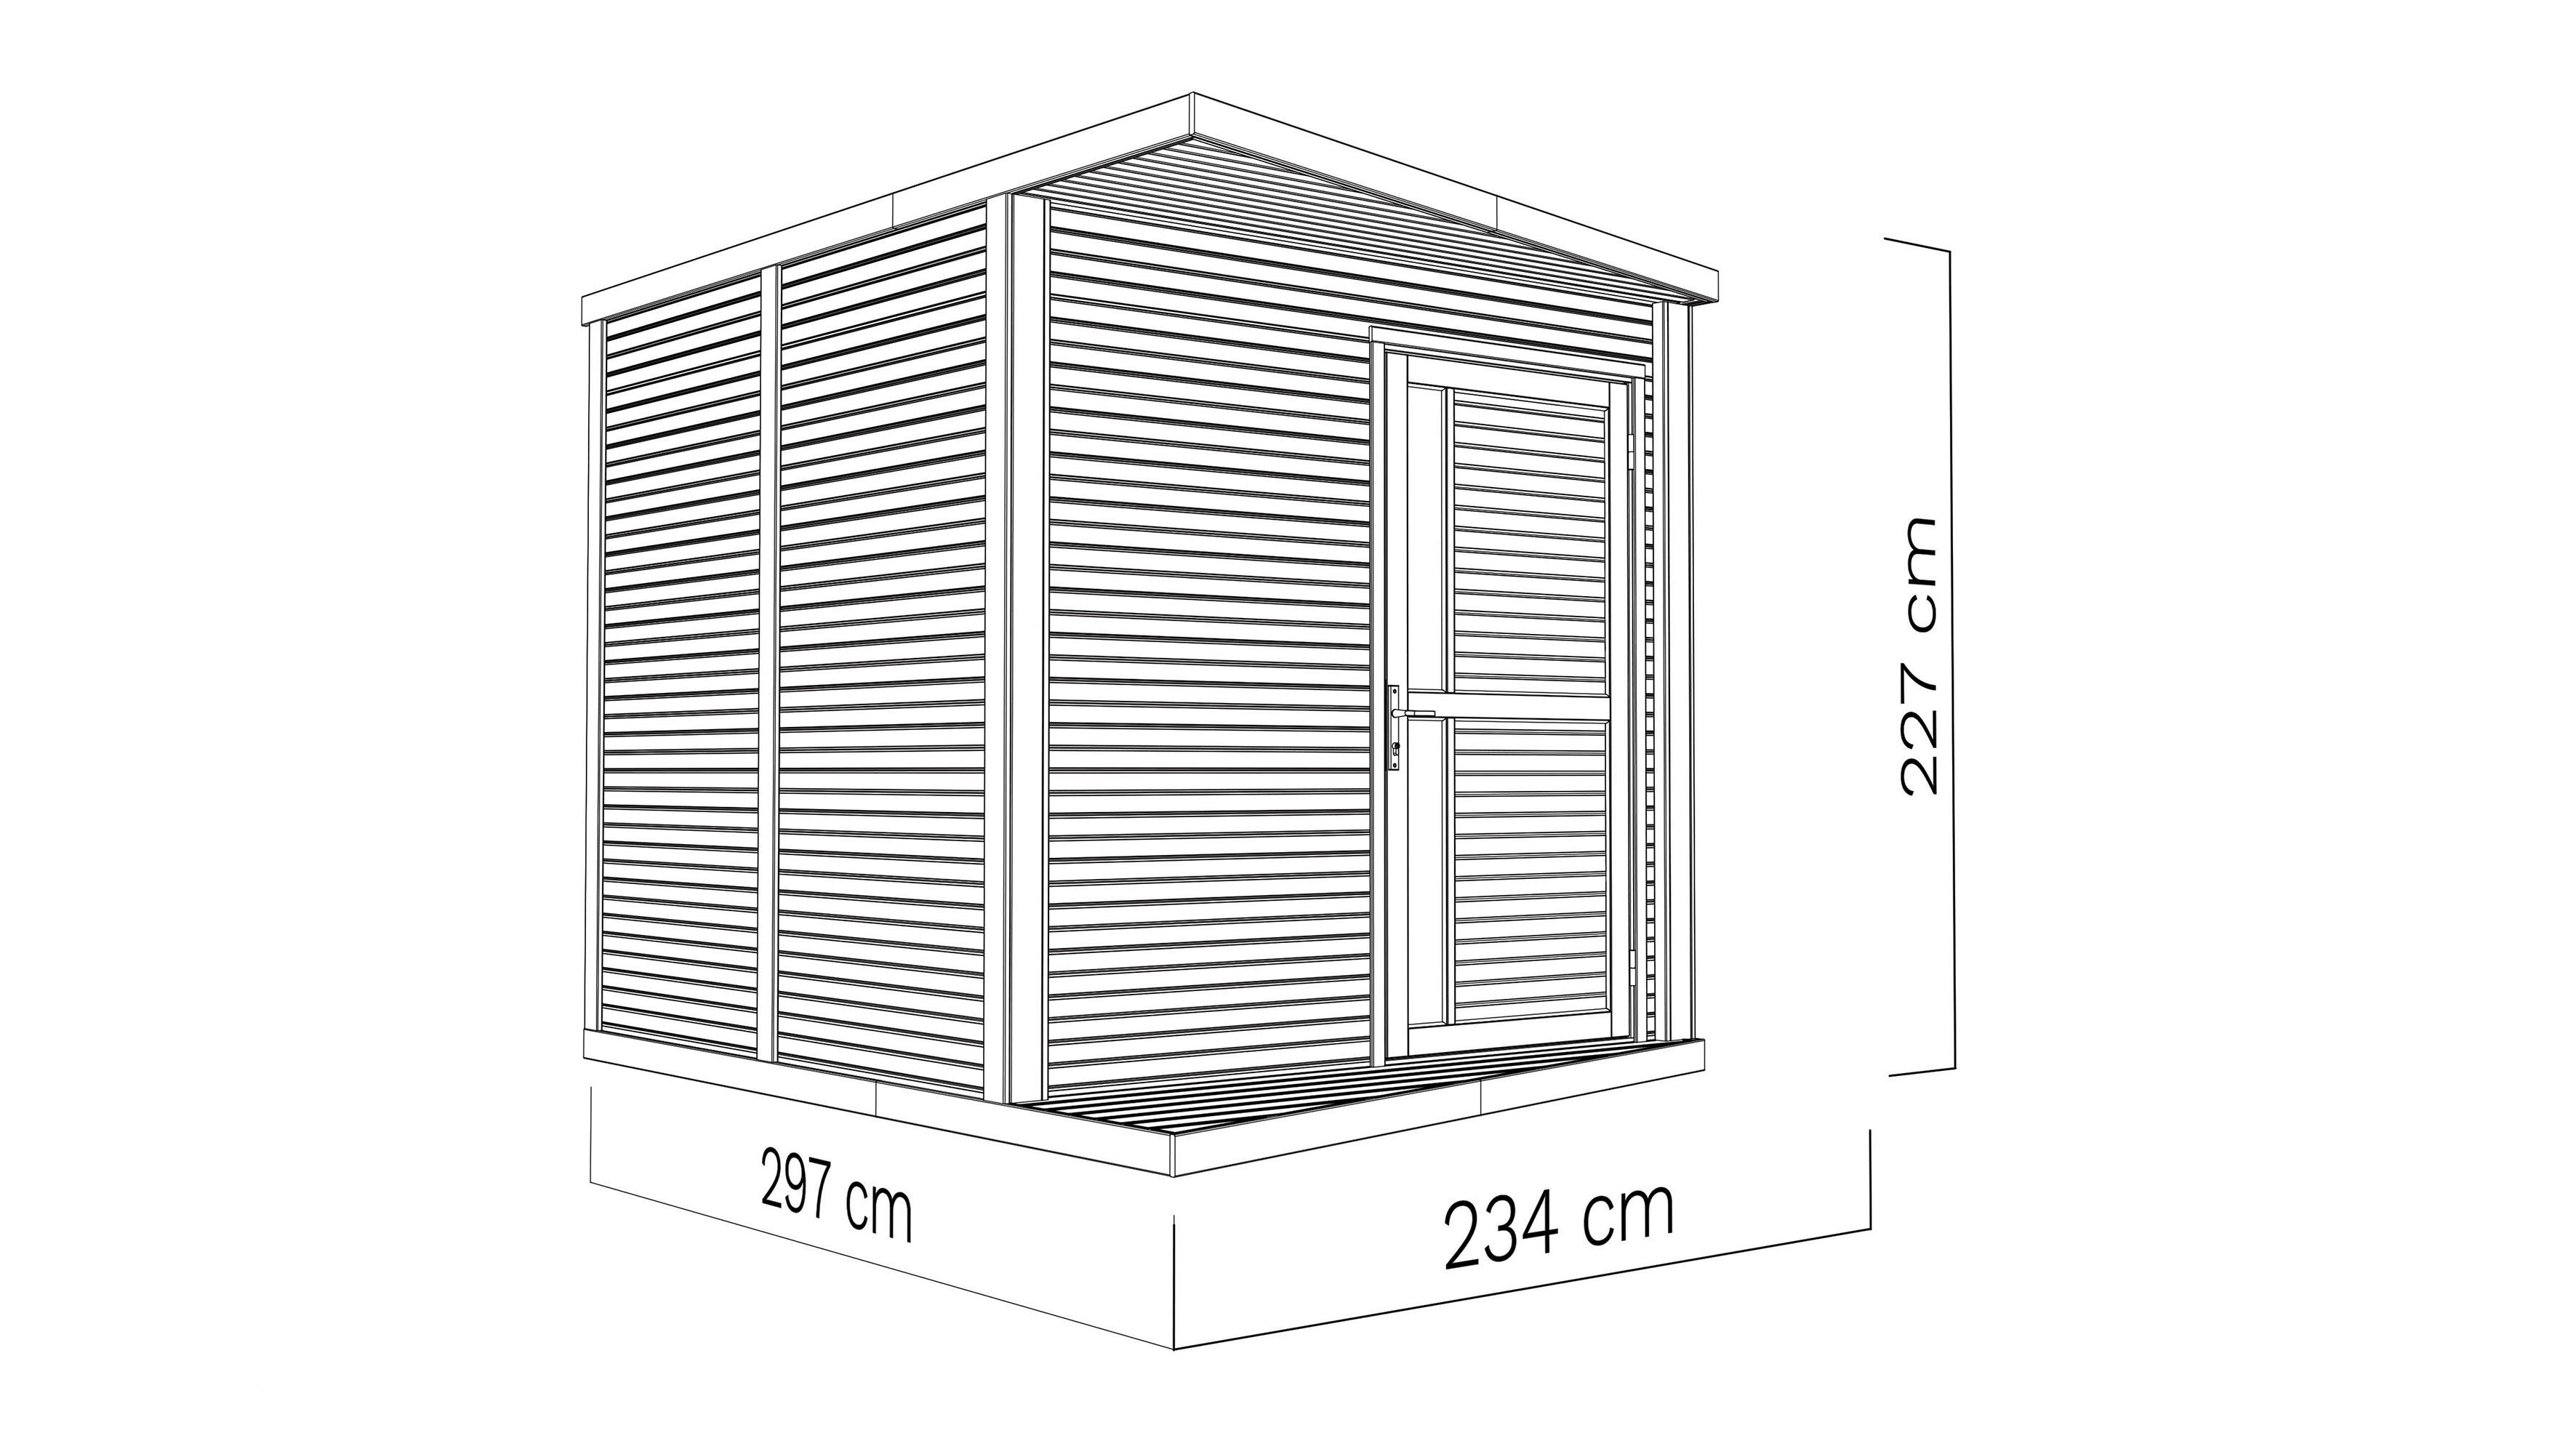 Rhombus 237x307 cm BxT: BERTILO Gartenhaus Konzept,